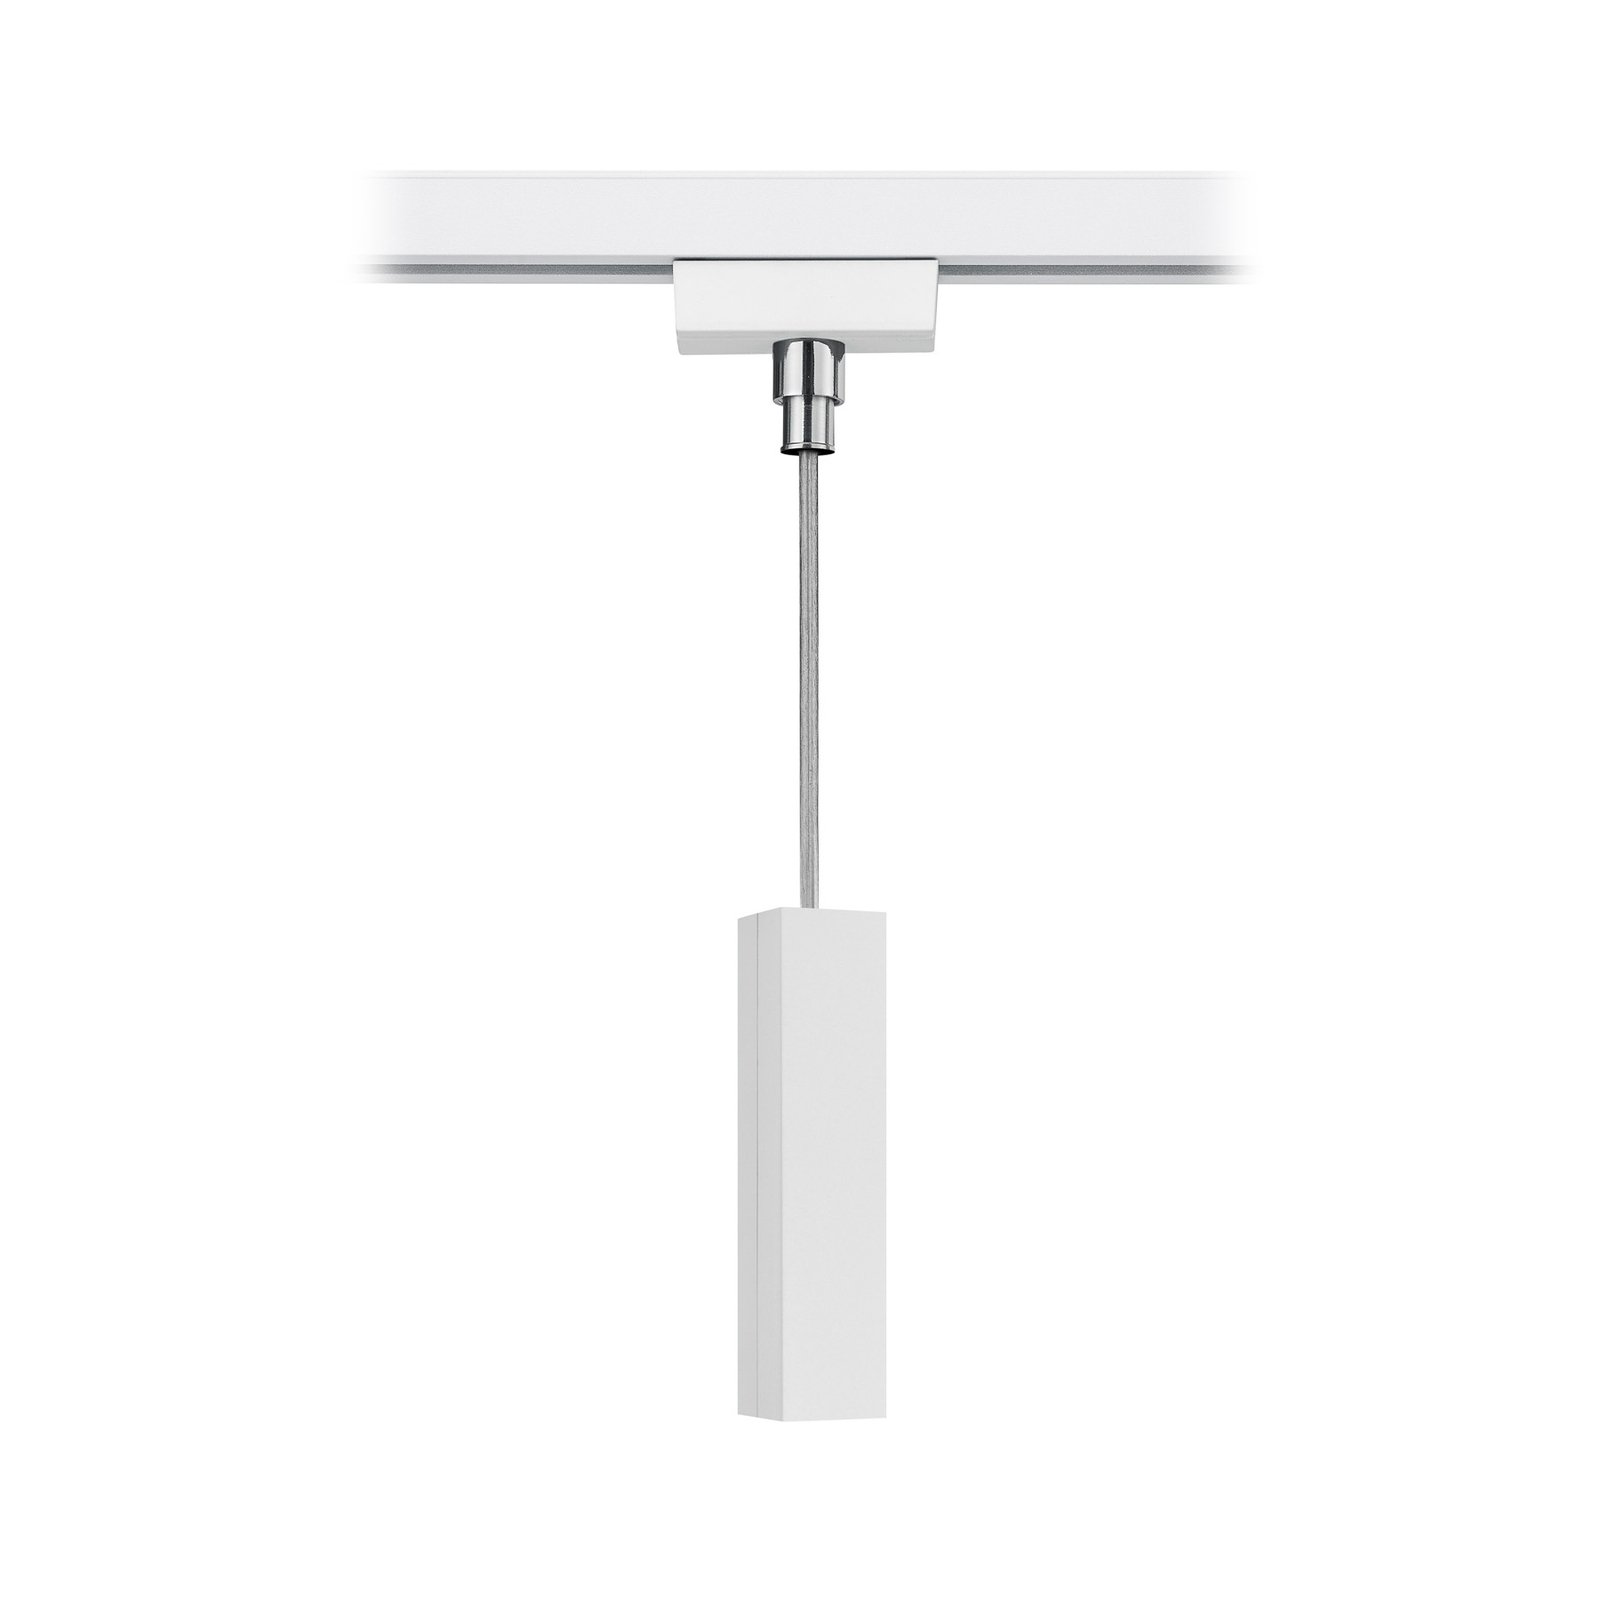 Hanglamp-adapter voor DUOline stroomrail, mat wit